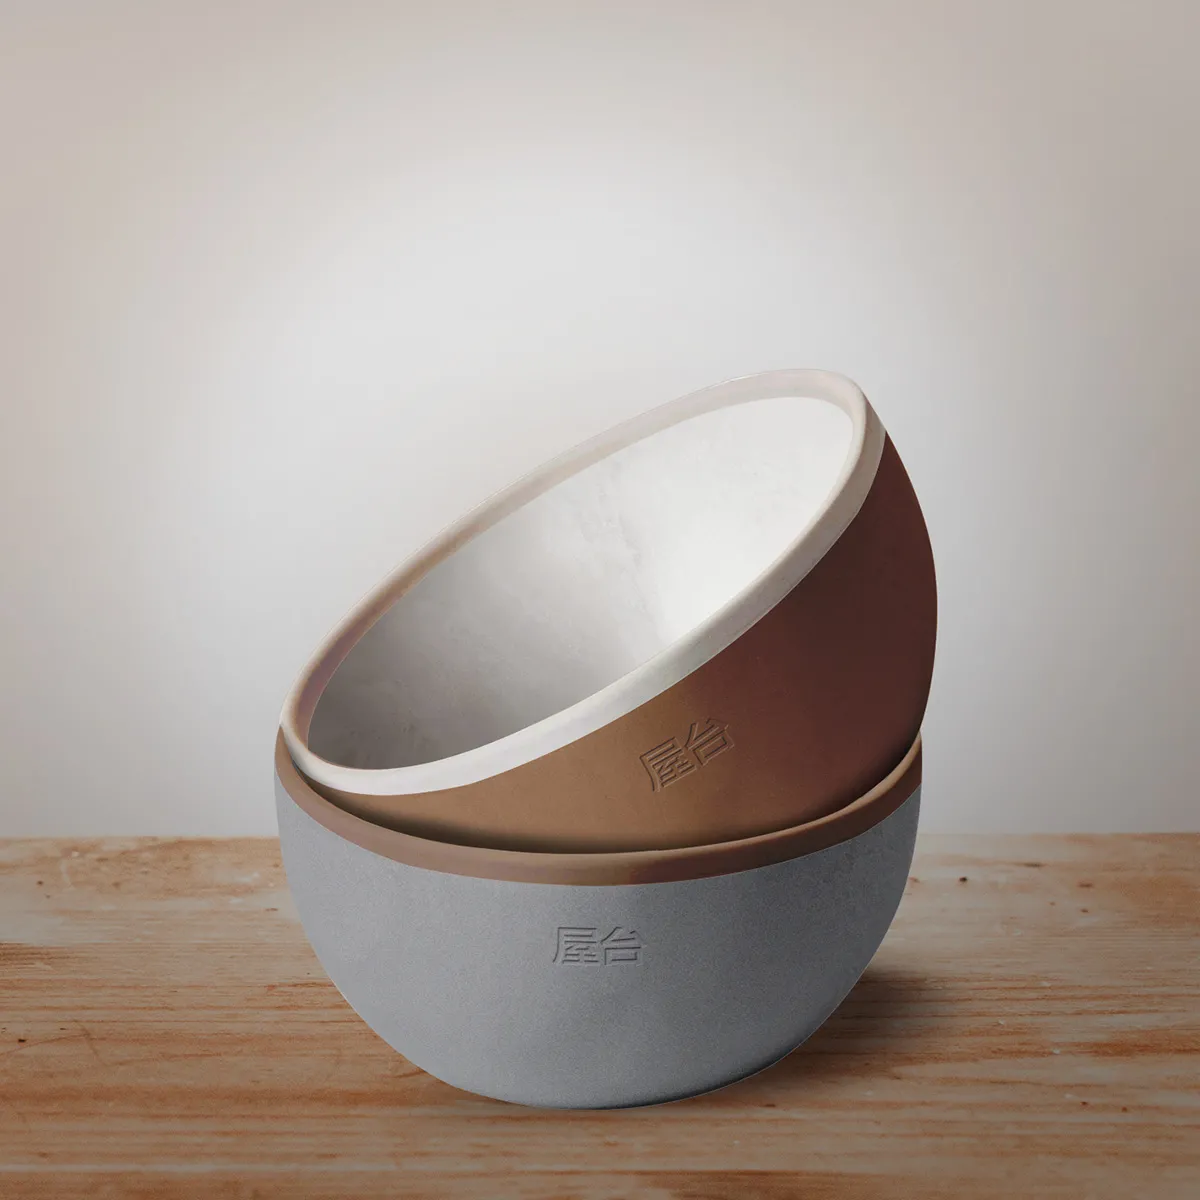 ceramic tableware bowl design nonfacture